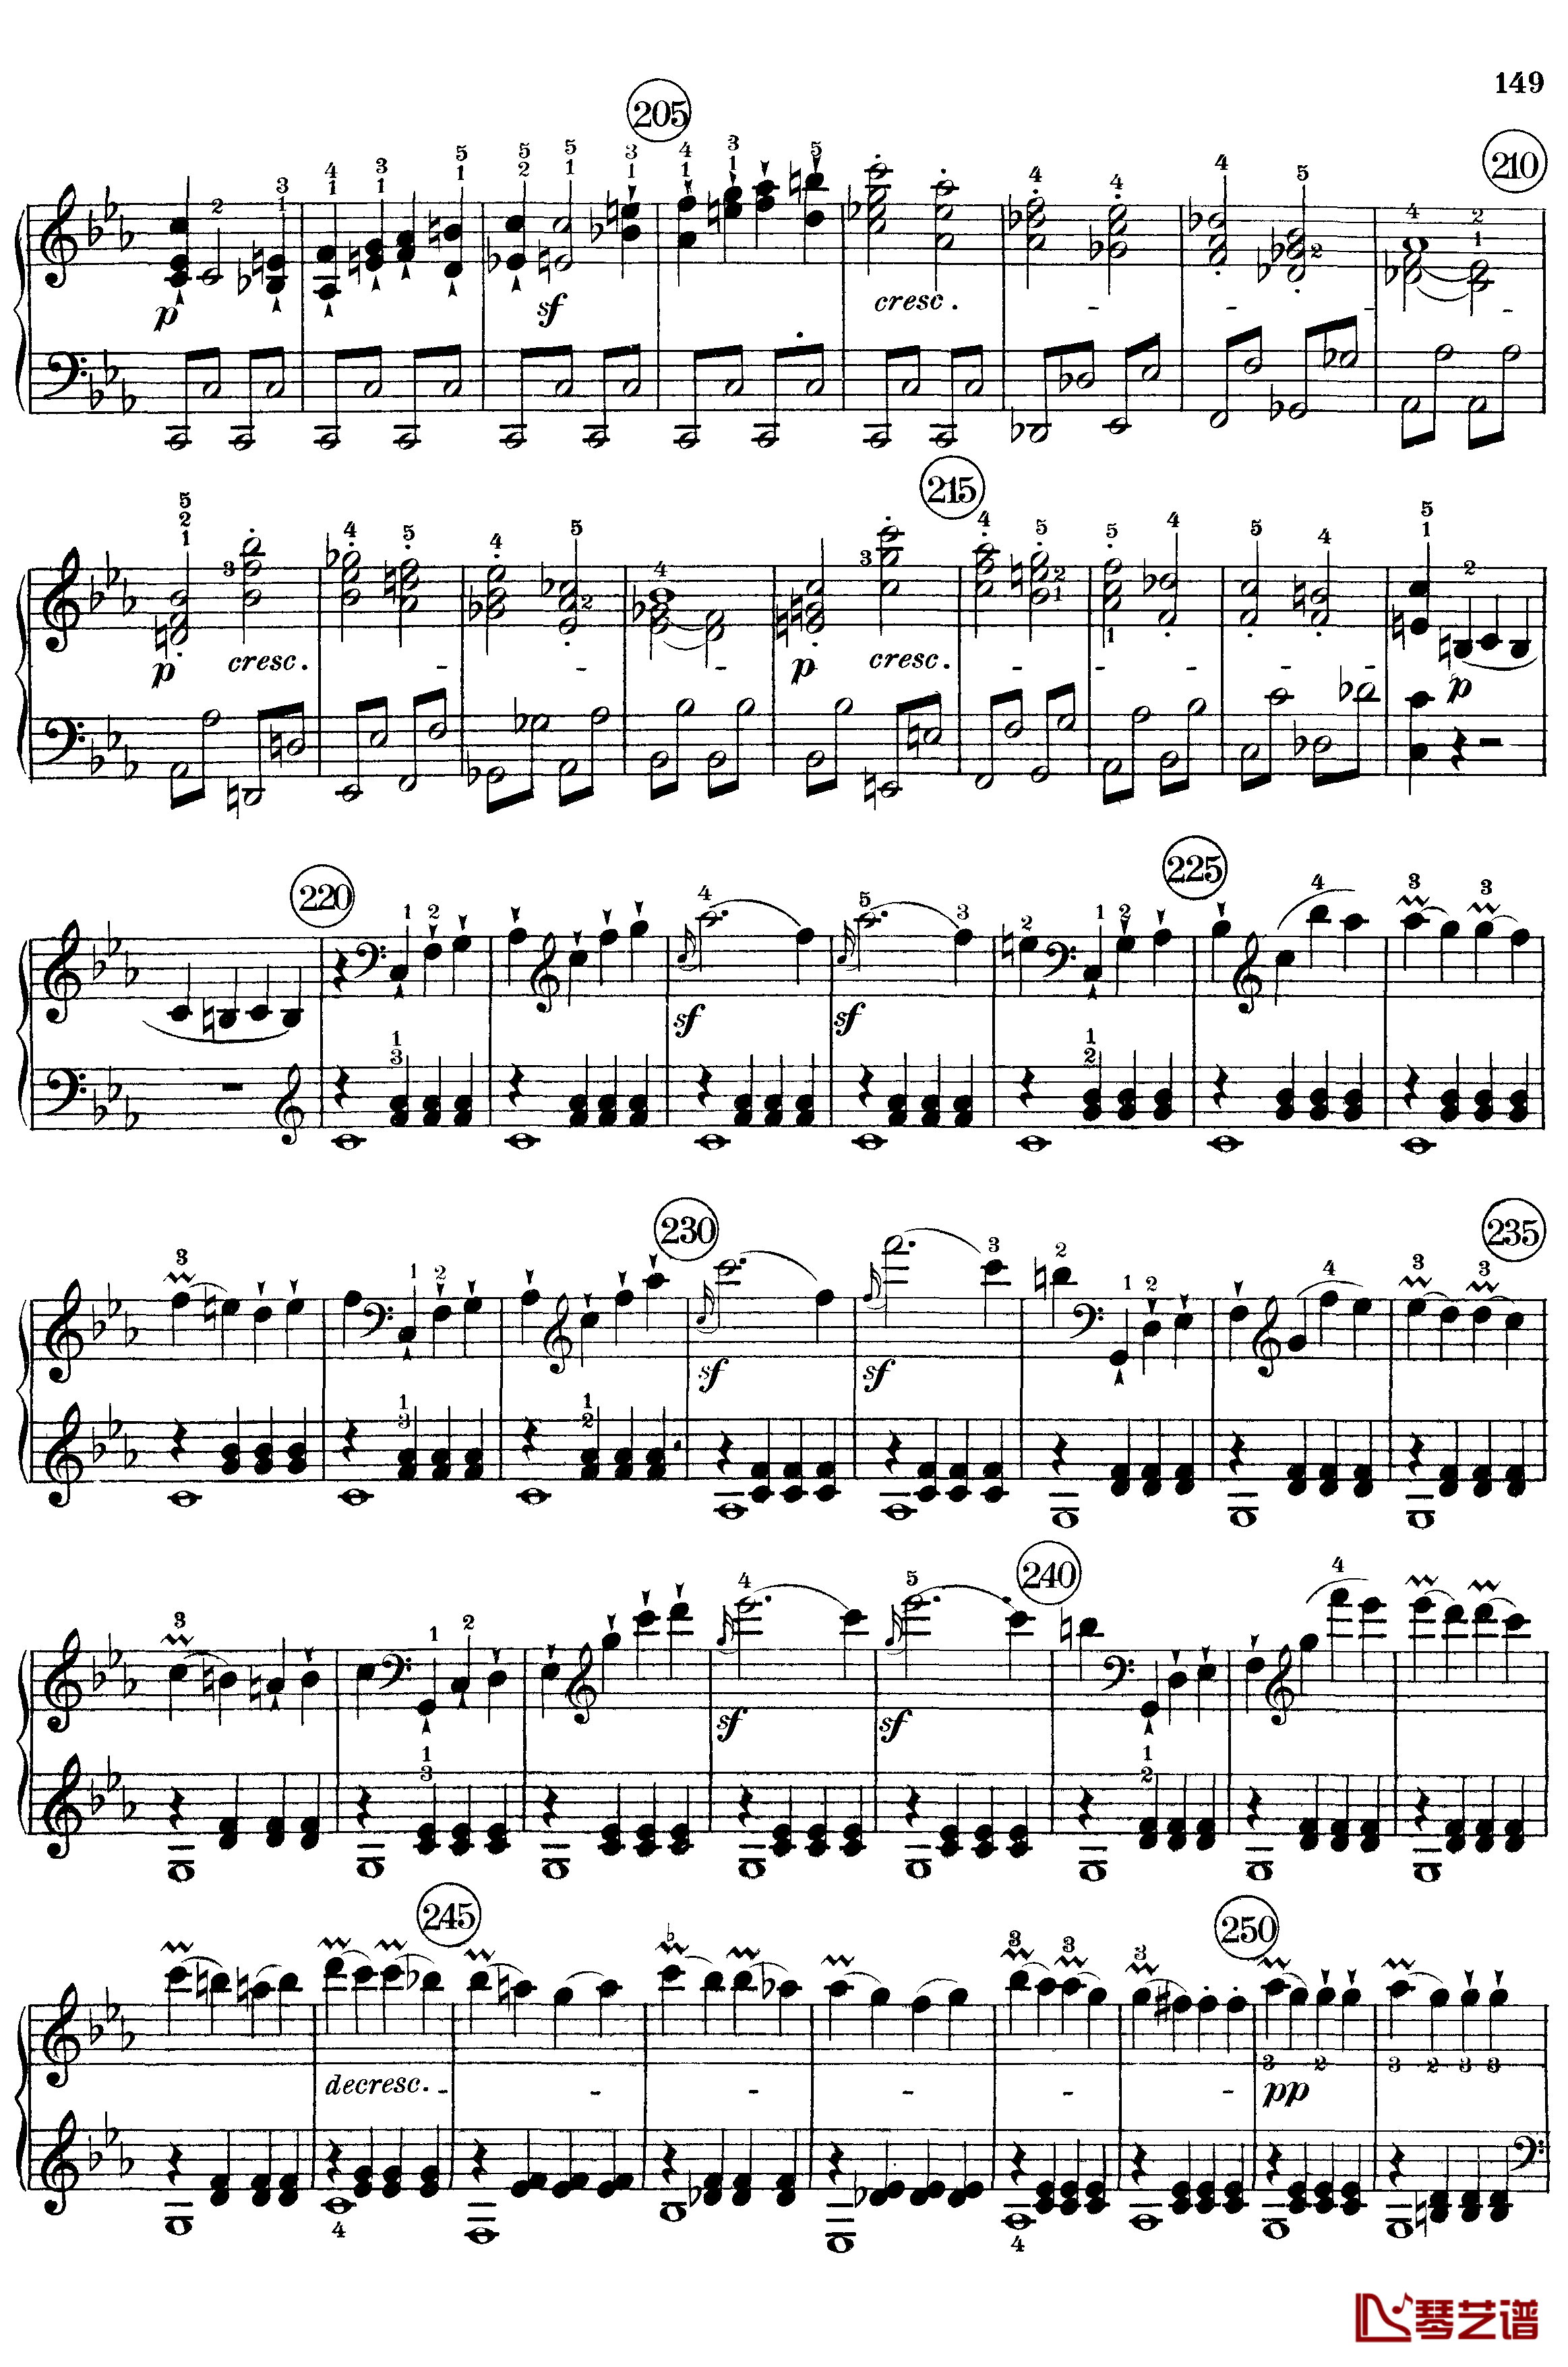 悲怆钢琴谱-c小调第八号钢琴奏鸣曲-全乐章-带指法版-贝多芬-beethoven7